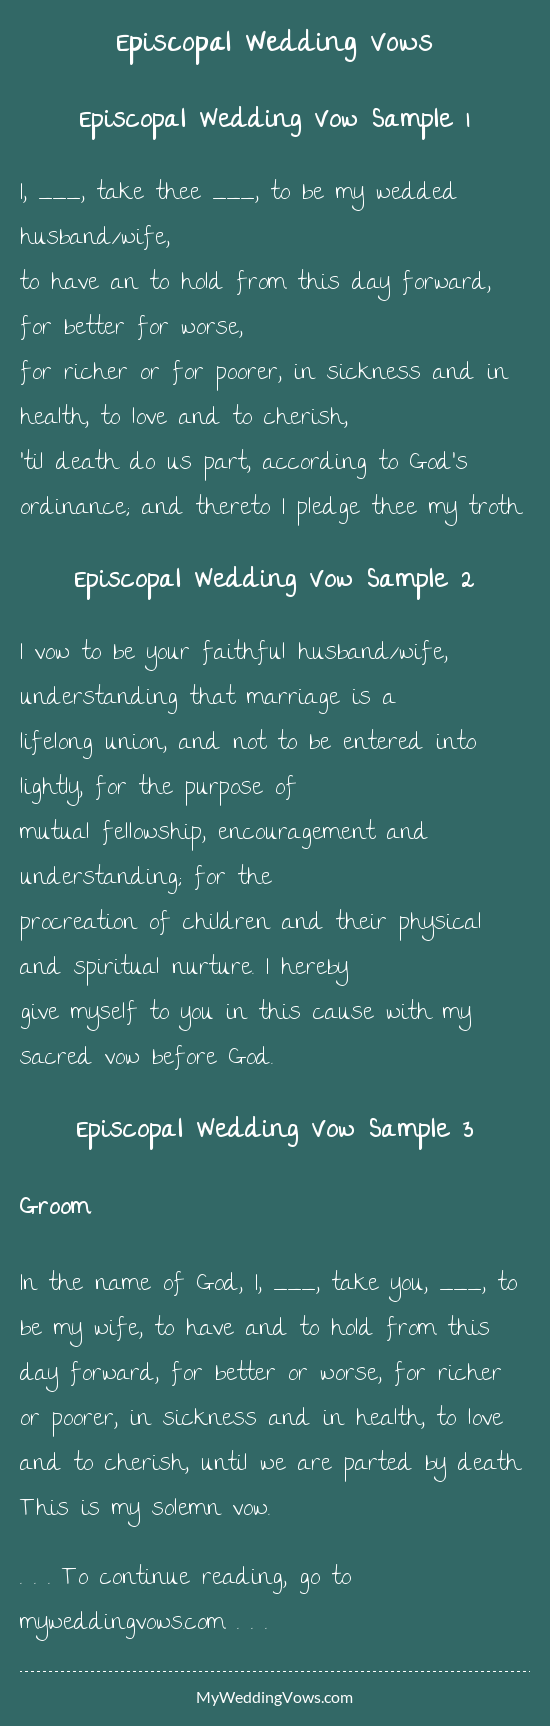 Episcopal Wedding Vows